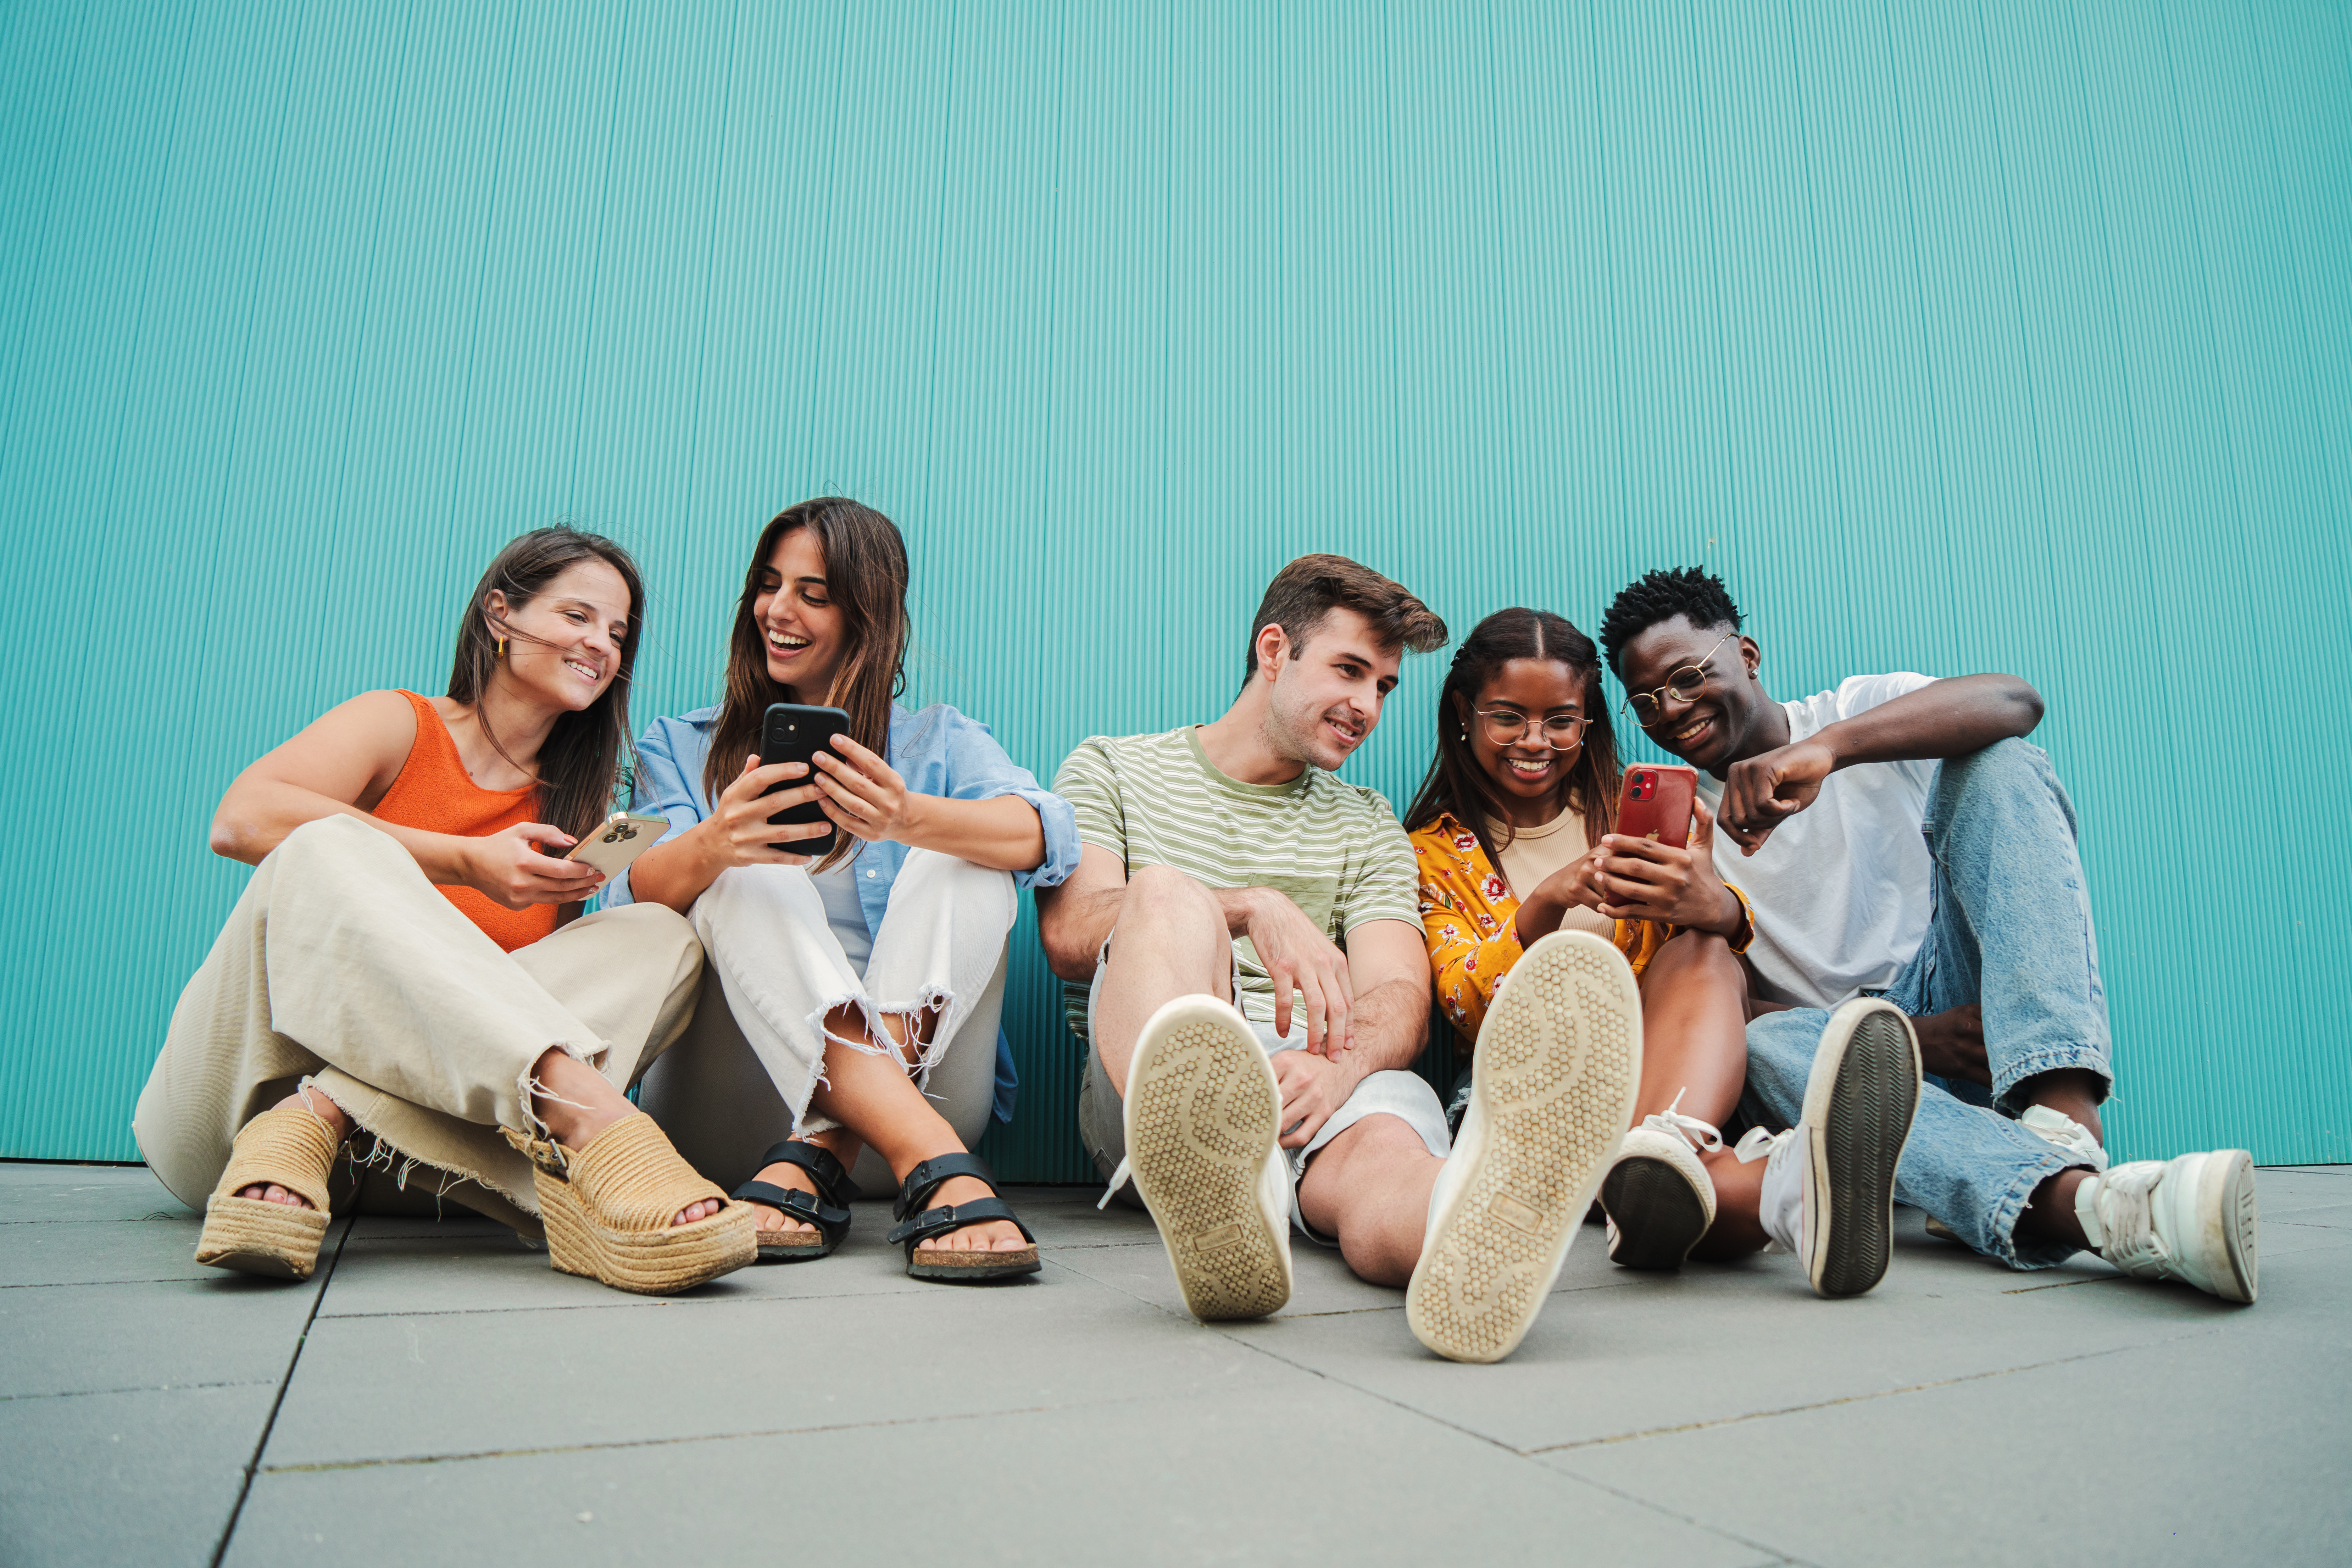 Grupo de 5 pessoas sentadas no chão e encostadas em uma parede azul. Da esquerda para direita tem: 1 - mulher branca, vestida com uma regata laranja, uma calça e uma sandália bege, ela está sorrindo, com um celular na não e está olhando para o celular da pessoa dois. 2 - mulher branca, vestindo uma camisa e uma calça jeans, e uma sandália preta, está segurando um celular e interagindo com a pessoa um. 3 - homem branco vestindo uma camisa verde listrada, short jeans e tênis, está olhando para o celular da quarta pessoa. 4 - mulher negra, vestindo camiseta bege, uma camisa laranja e um tênis branco, está com um celular na mão e interagindo com as pessoas 3 e 5. 5 - homem negro, vestindo uma camiseta azul clara, calça jeans e tênis branco, está interagindo com a pessoa 4.